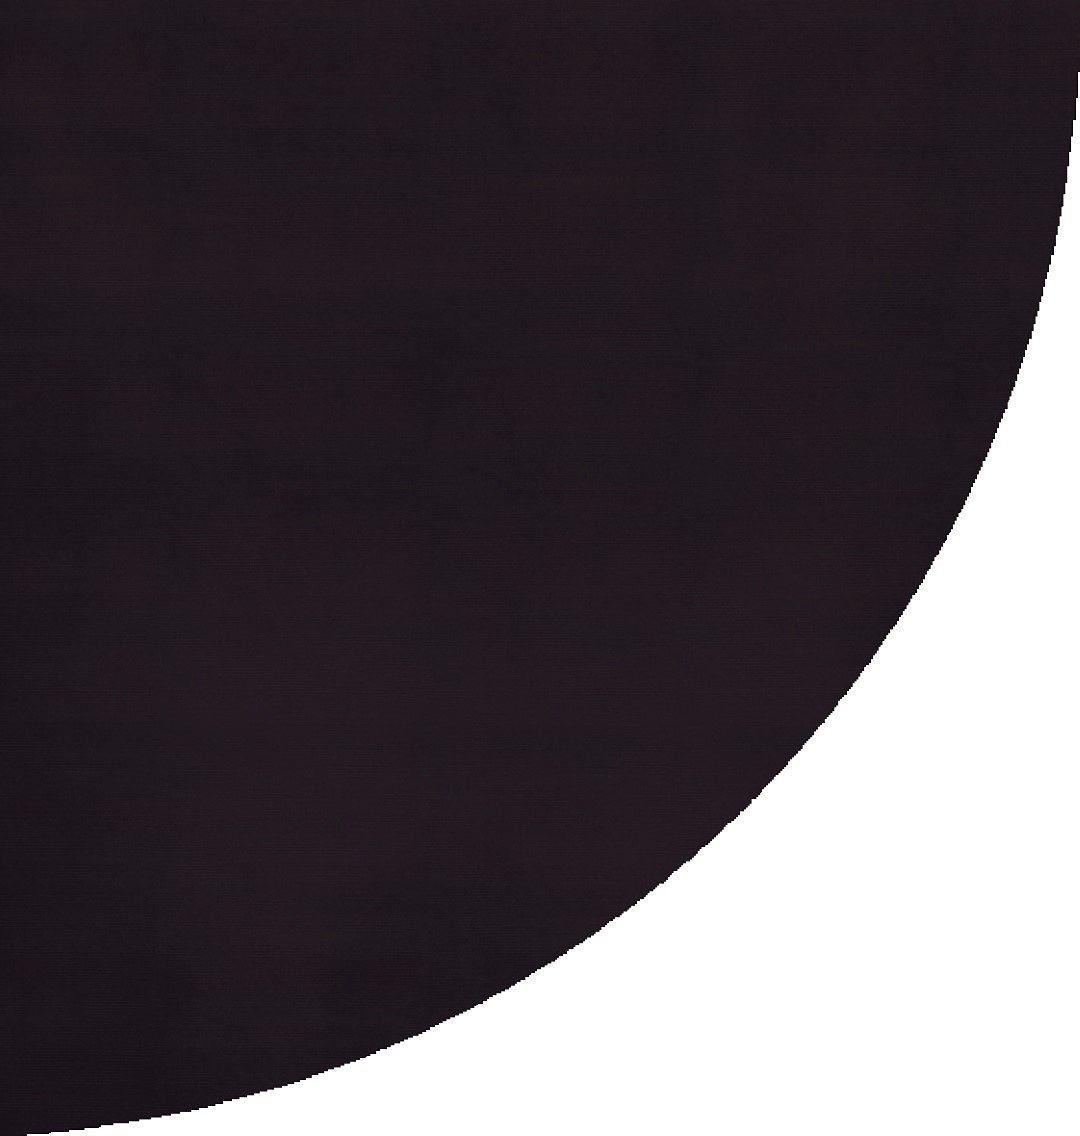 APELT - schwarz UNI Tischdecke Rips 4362 (1-tlg)